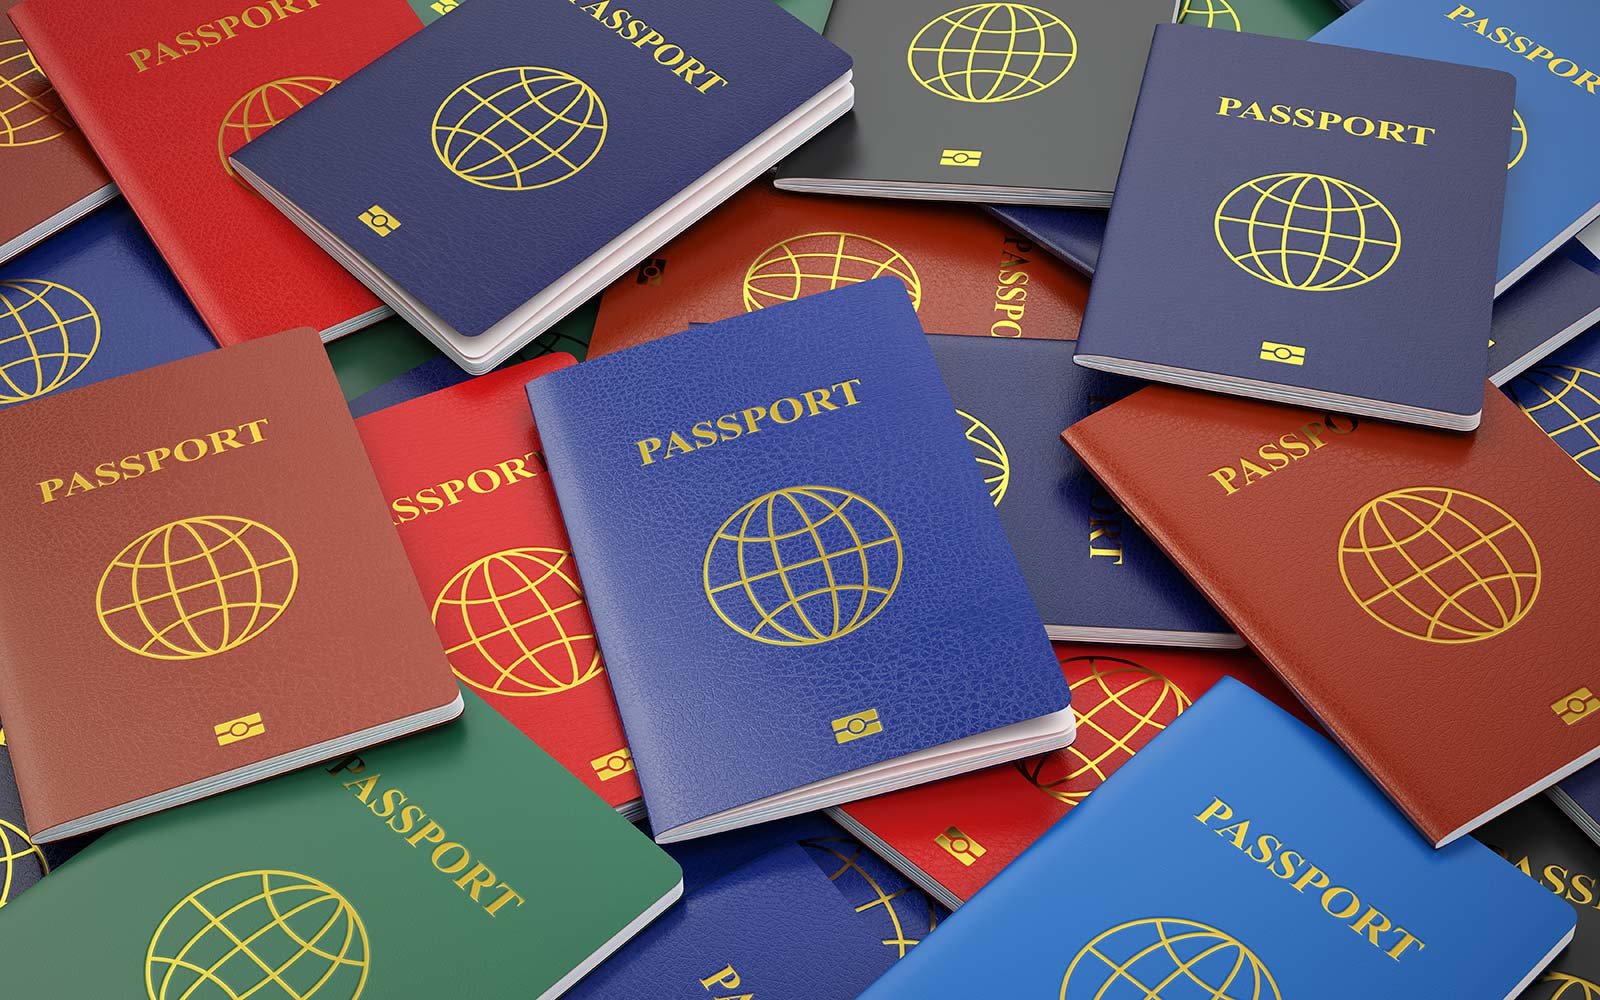 Является ли содействием в грехе использование паспорта для получения кредита?